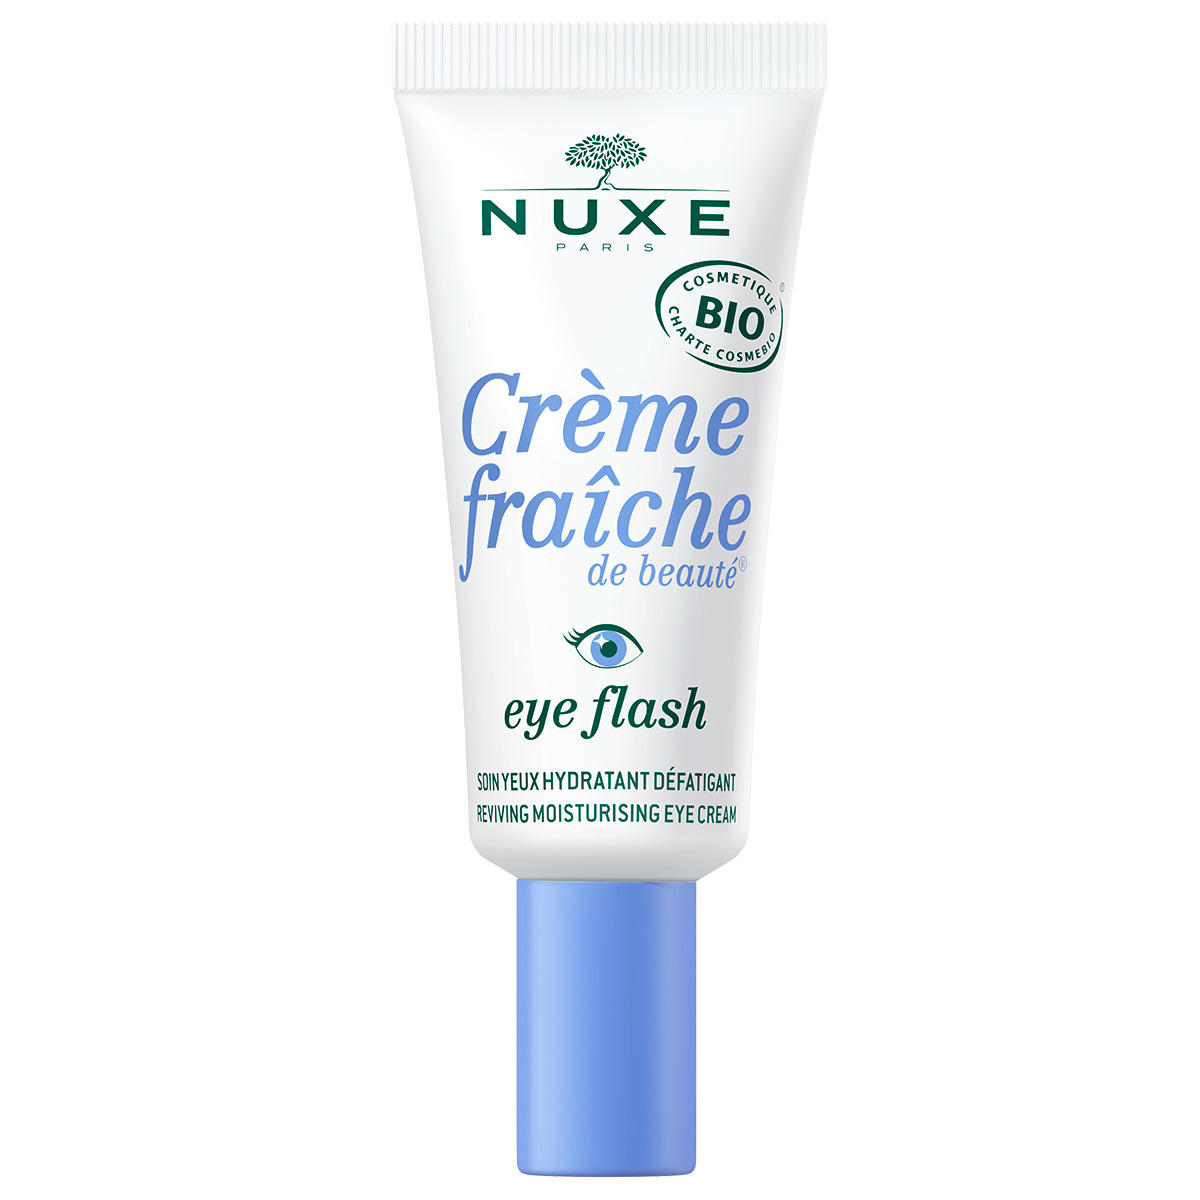 NUXE Crème Fraîche de Beauté Crema de ojos 15 ml - 1